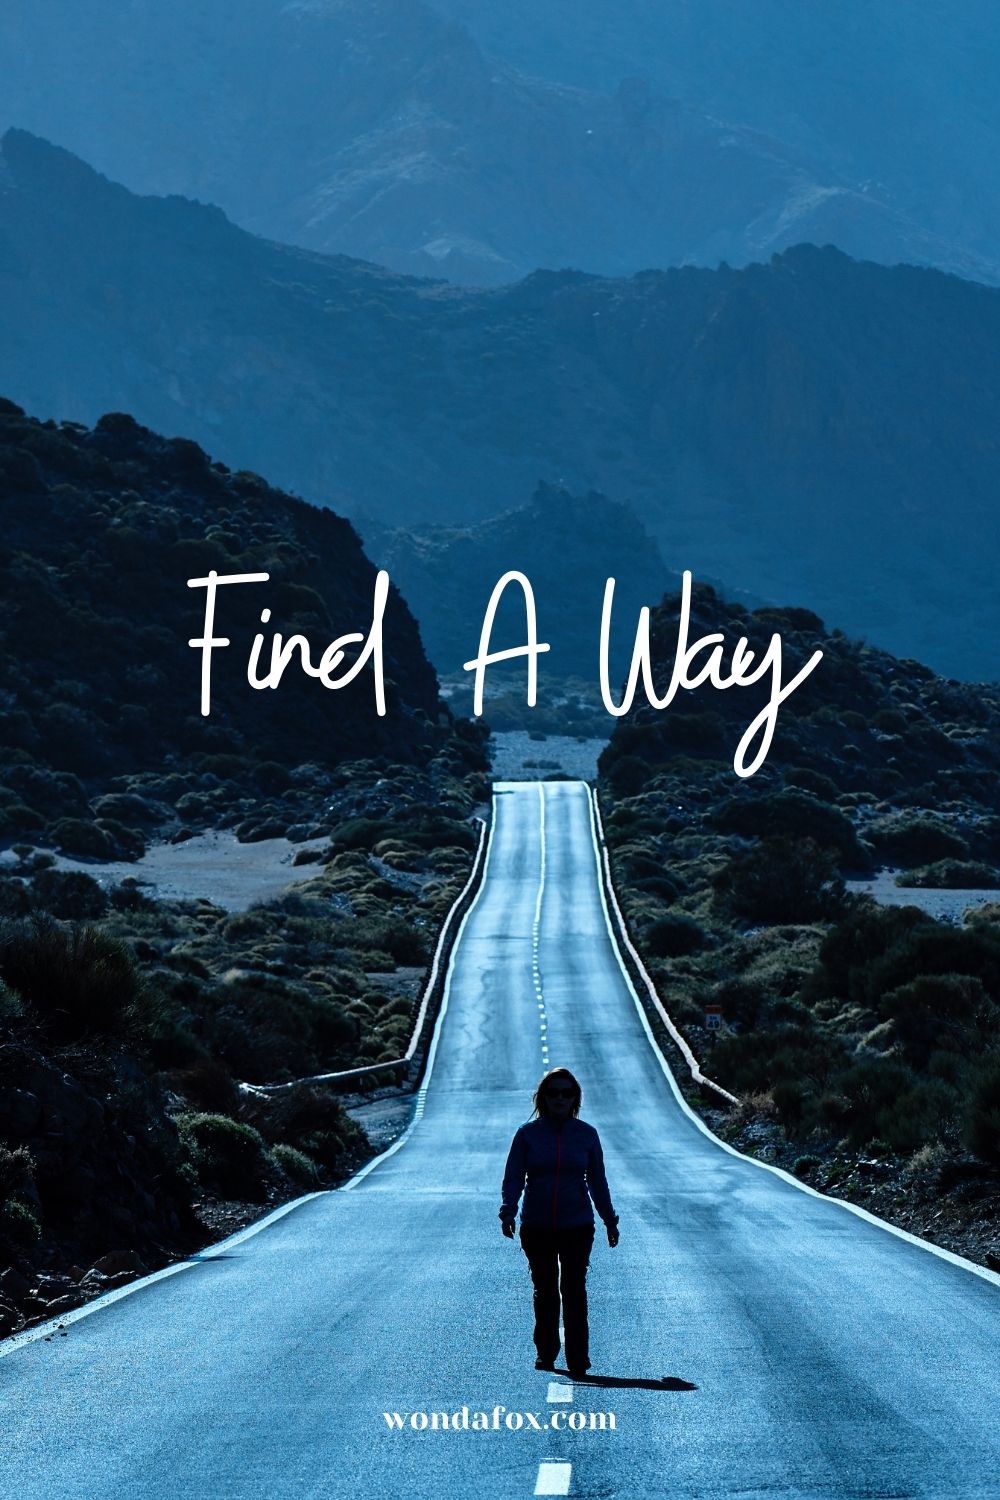  Find a way